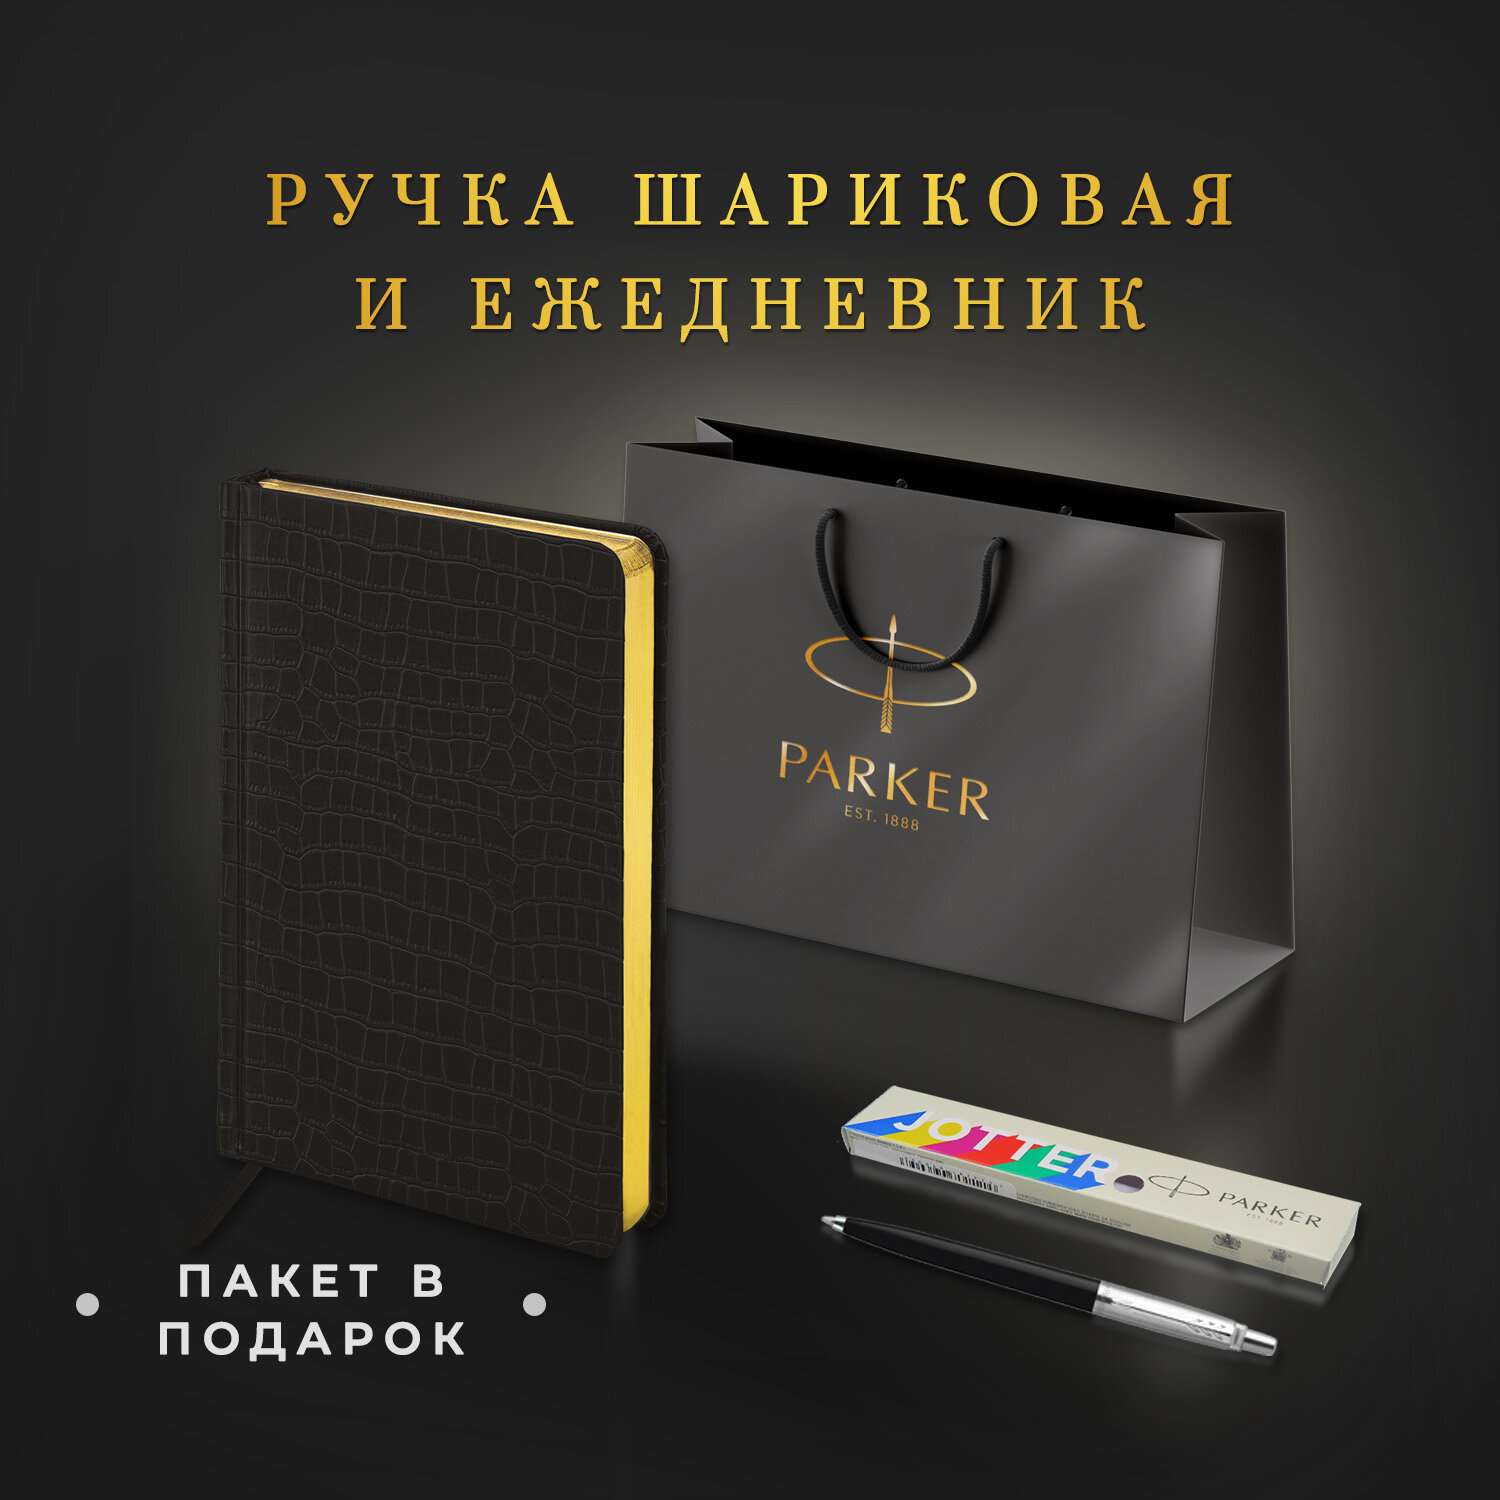 Подарочный набор PARKER ручка шариковая Parker и ежедневник А5 - фото 2